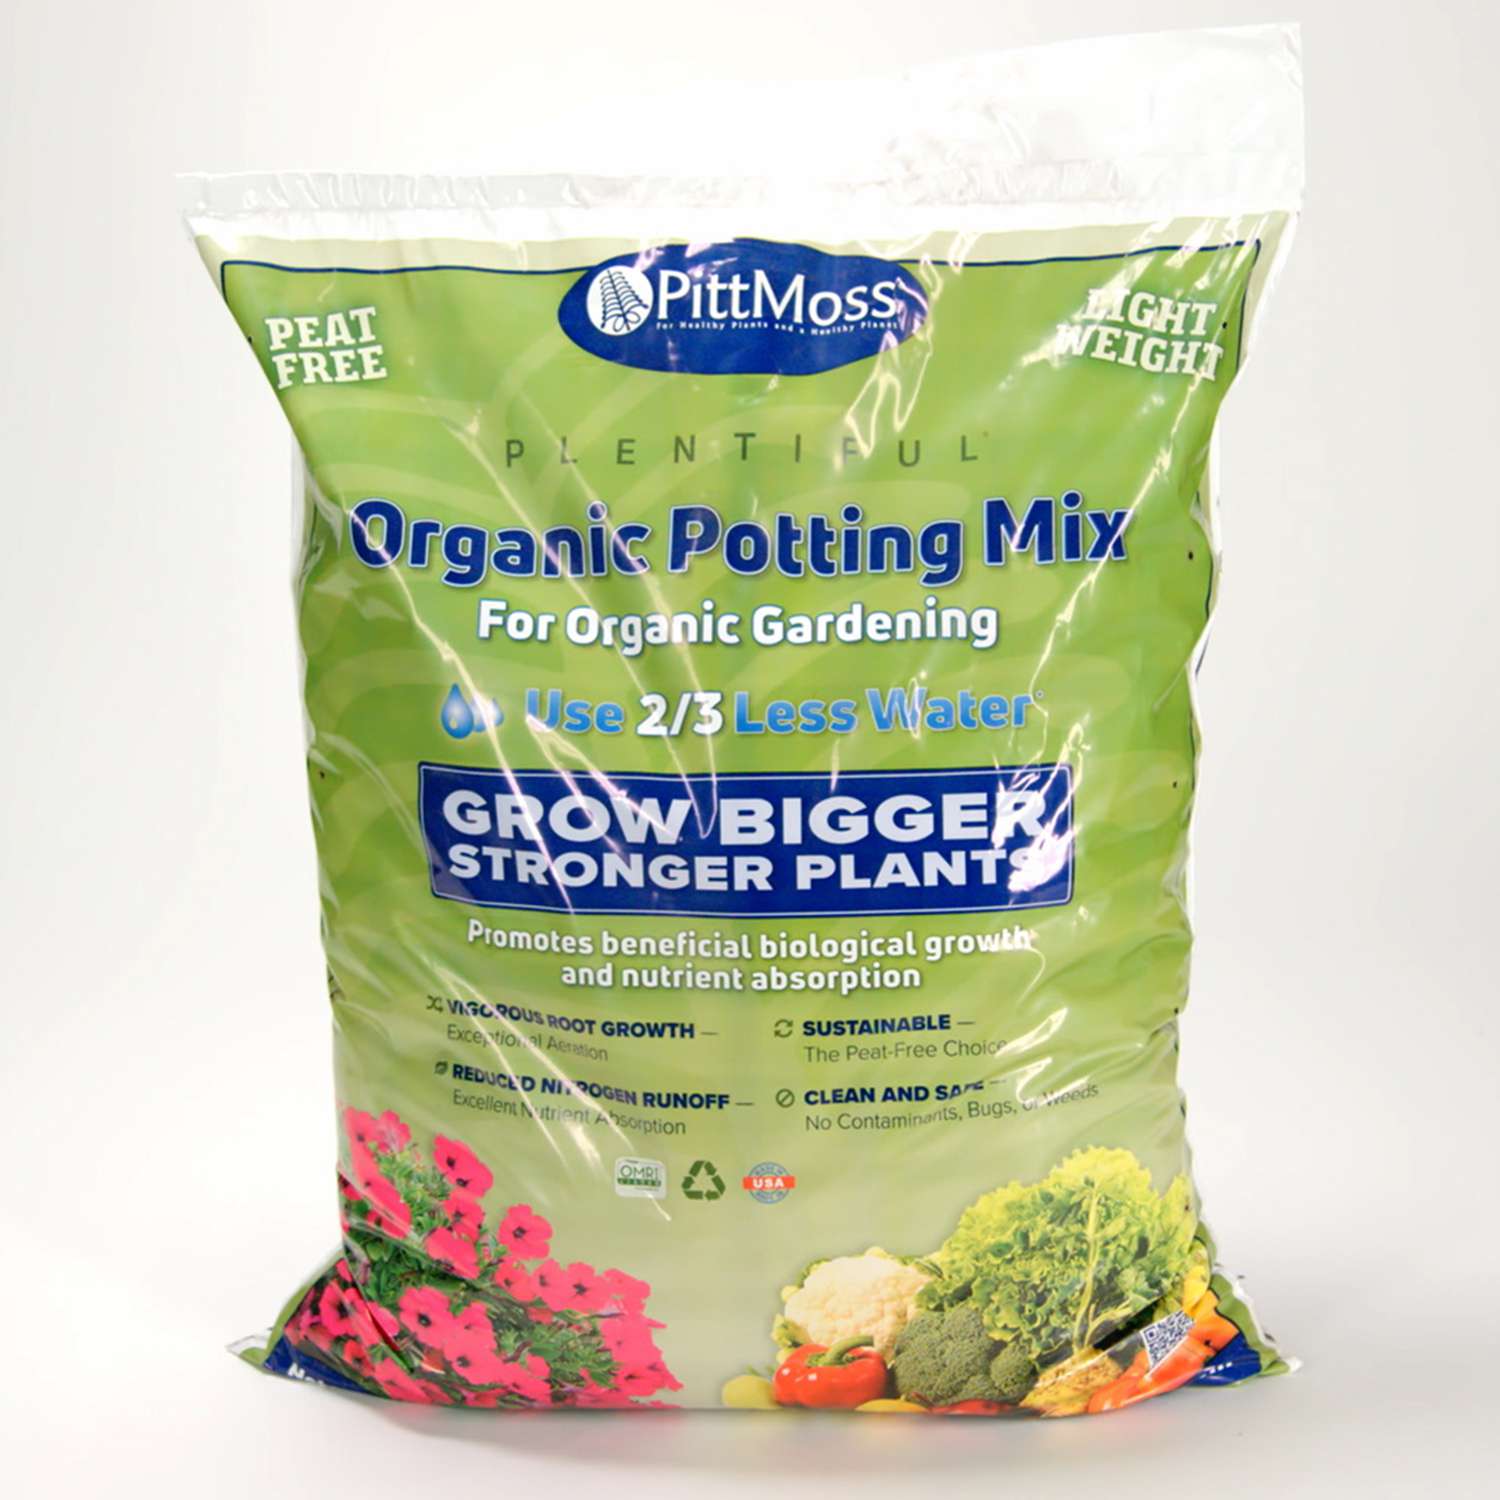 PittMoss Plentiful Organic Potting Mix